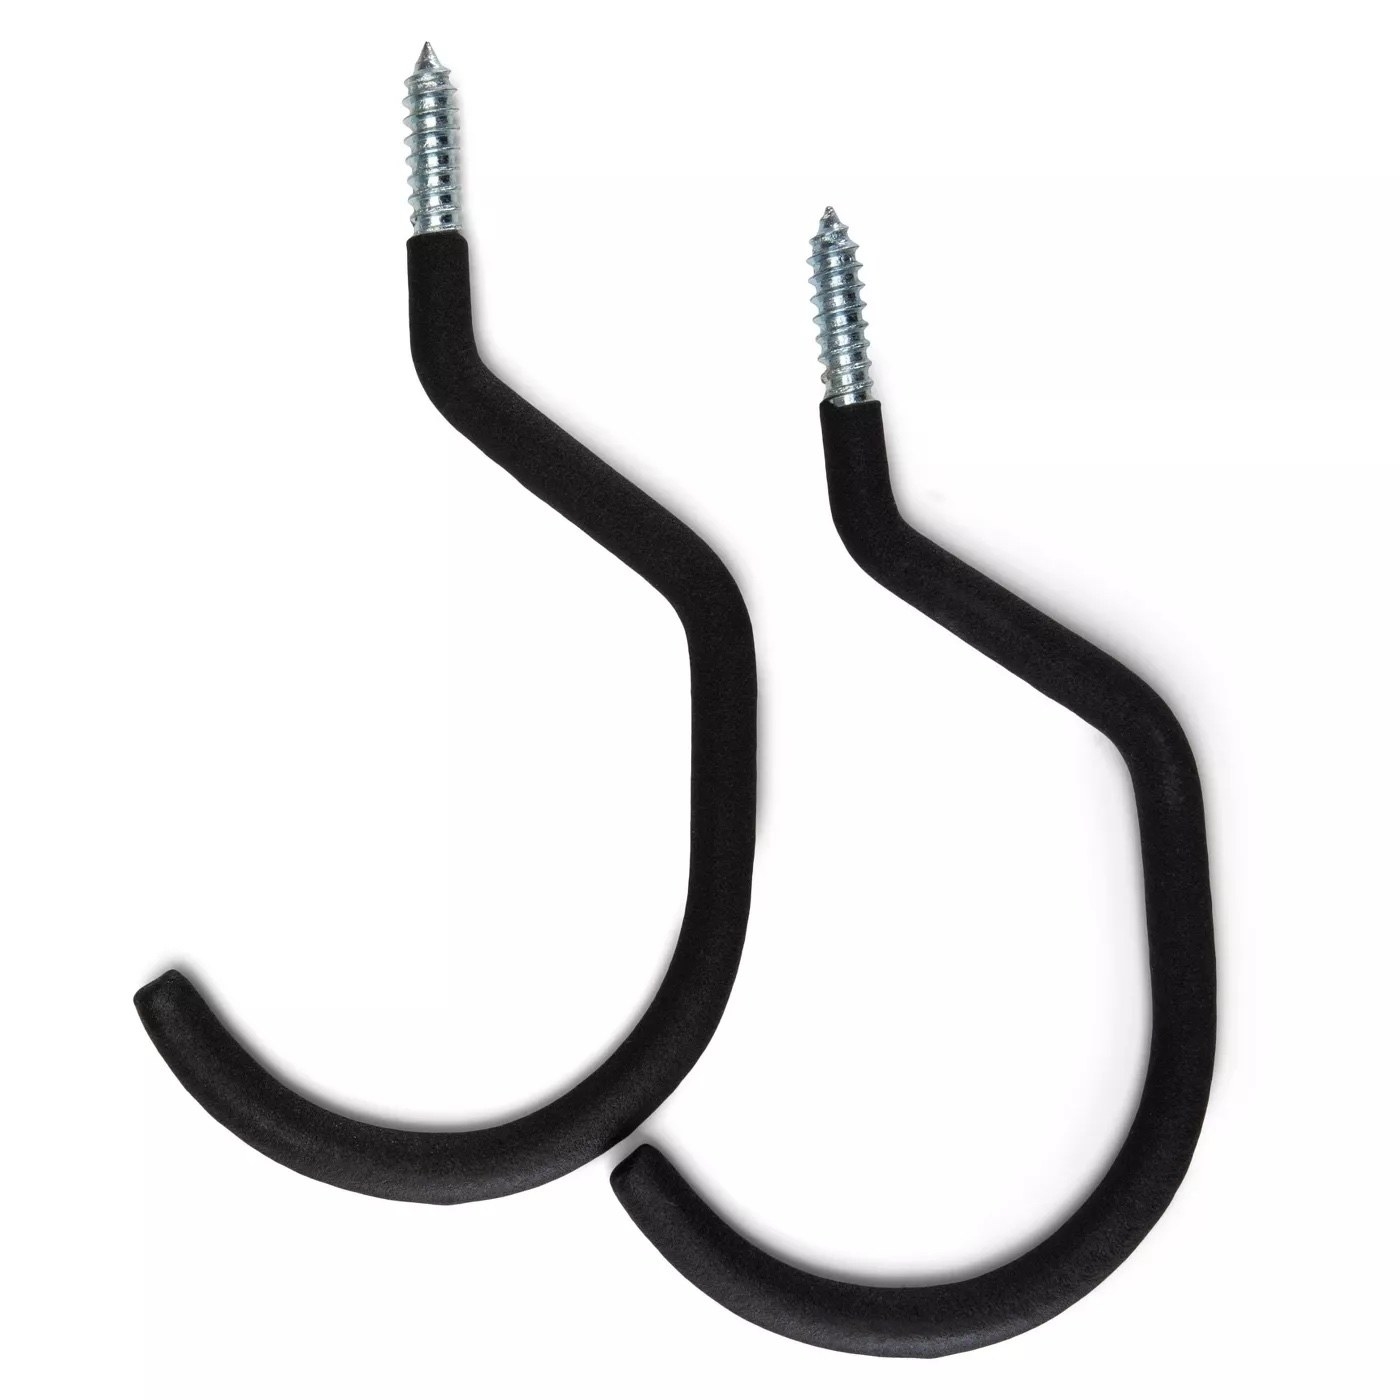 Two black bike hooks.